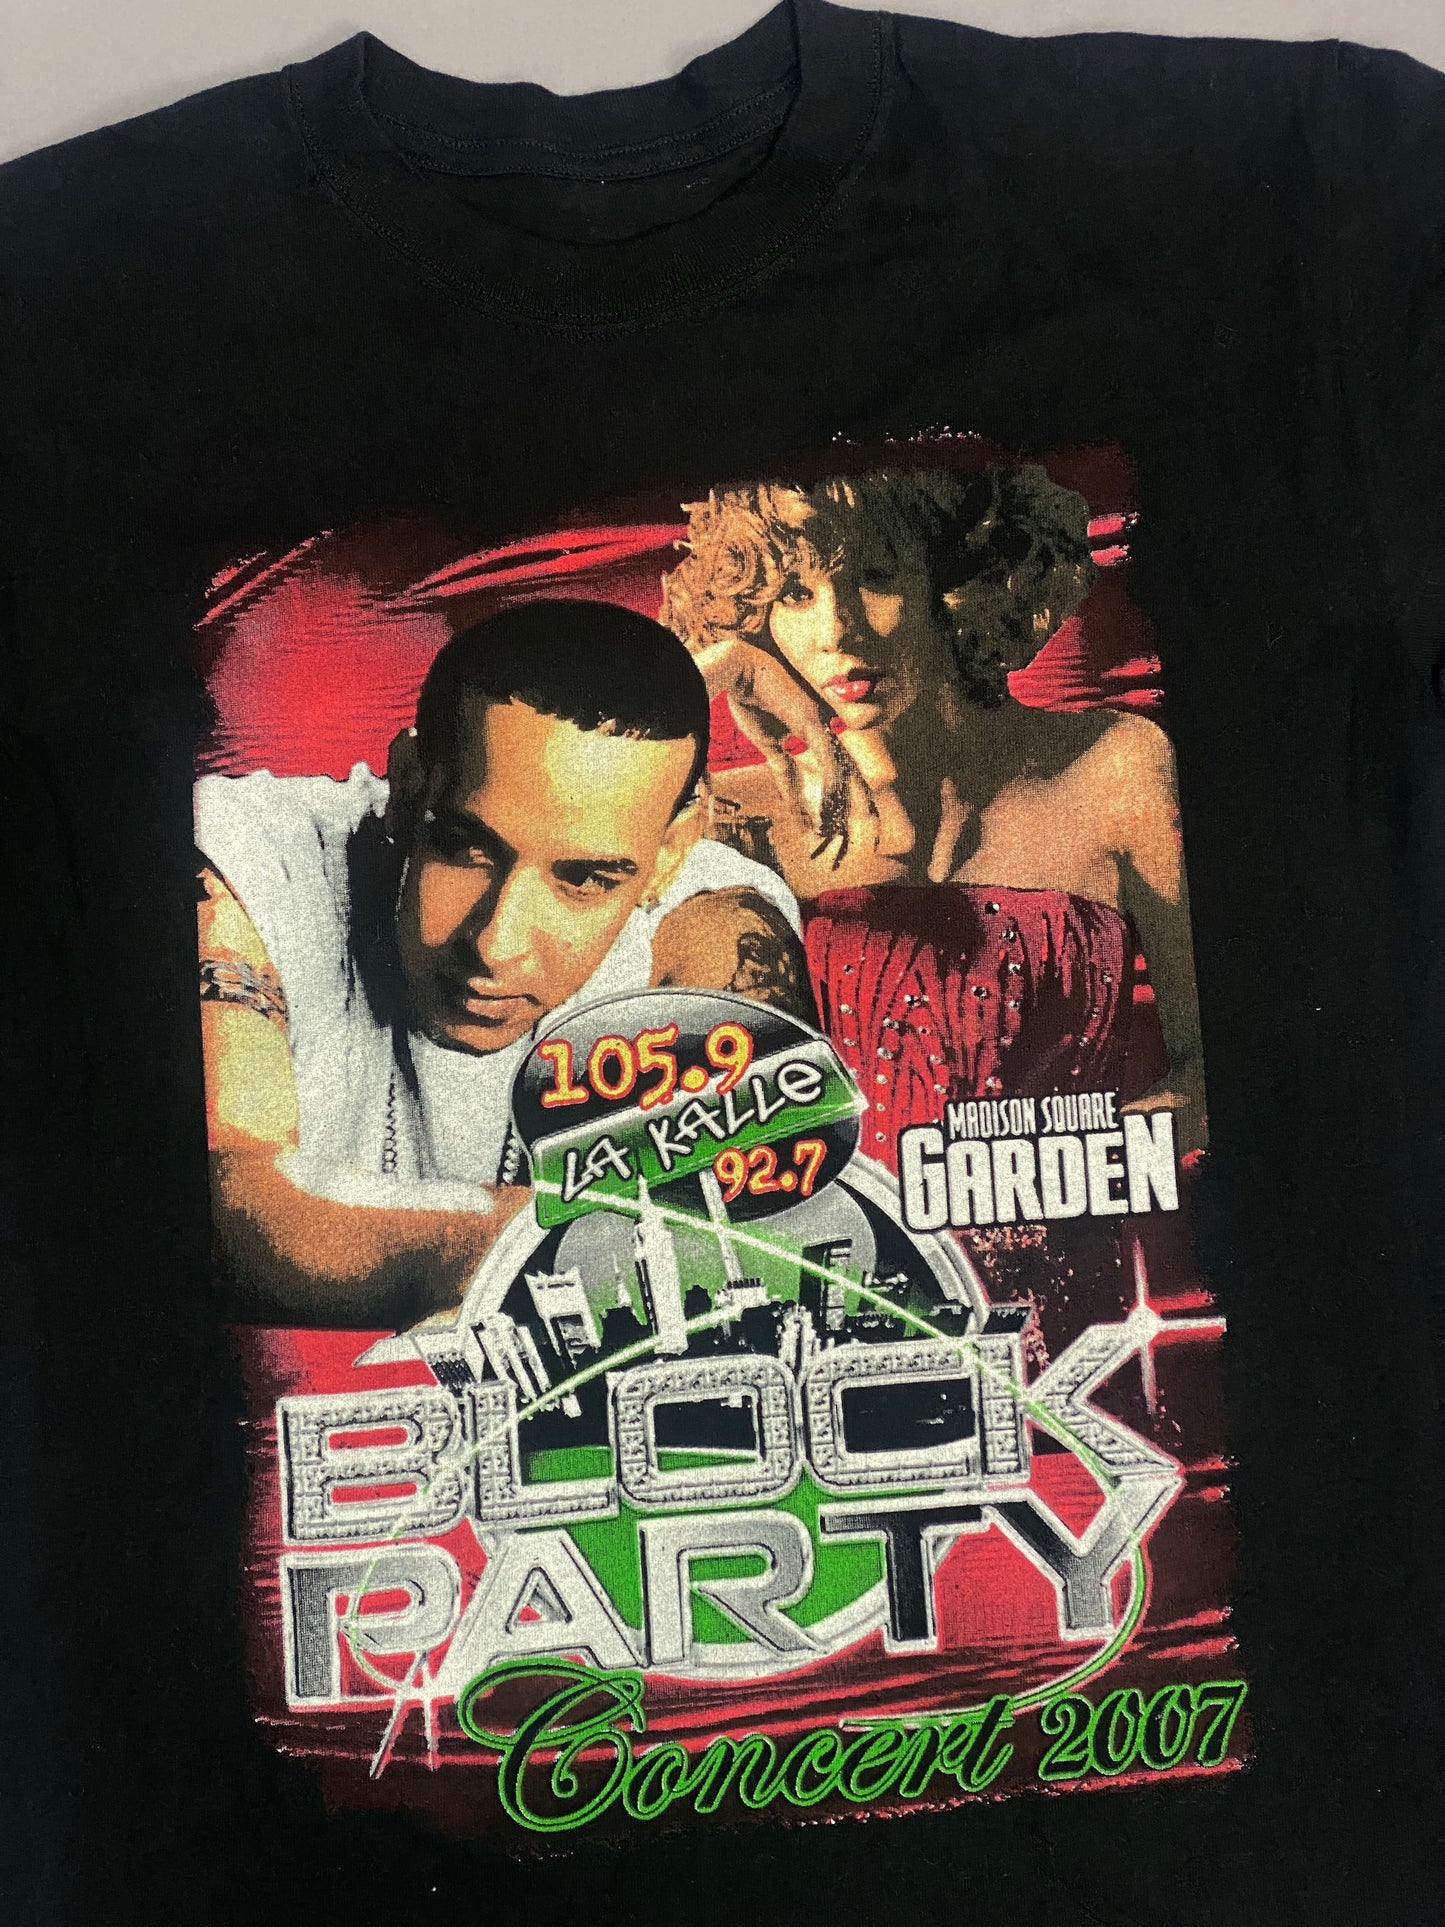 La Kalle 105.7 "Block Party" 2007 Vintage T-shirt